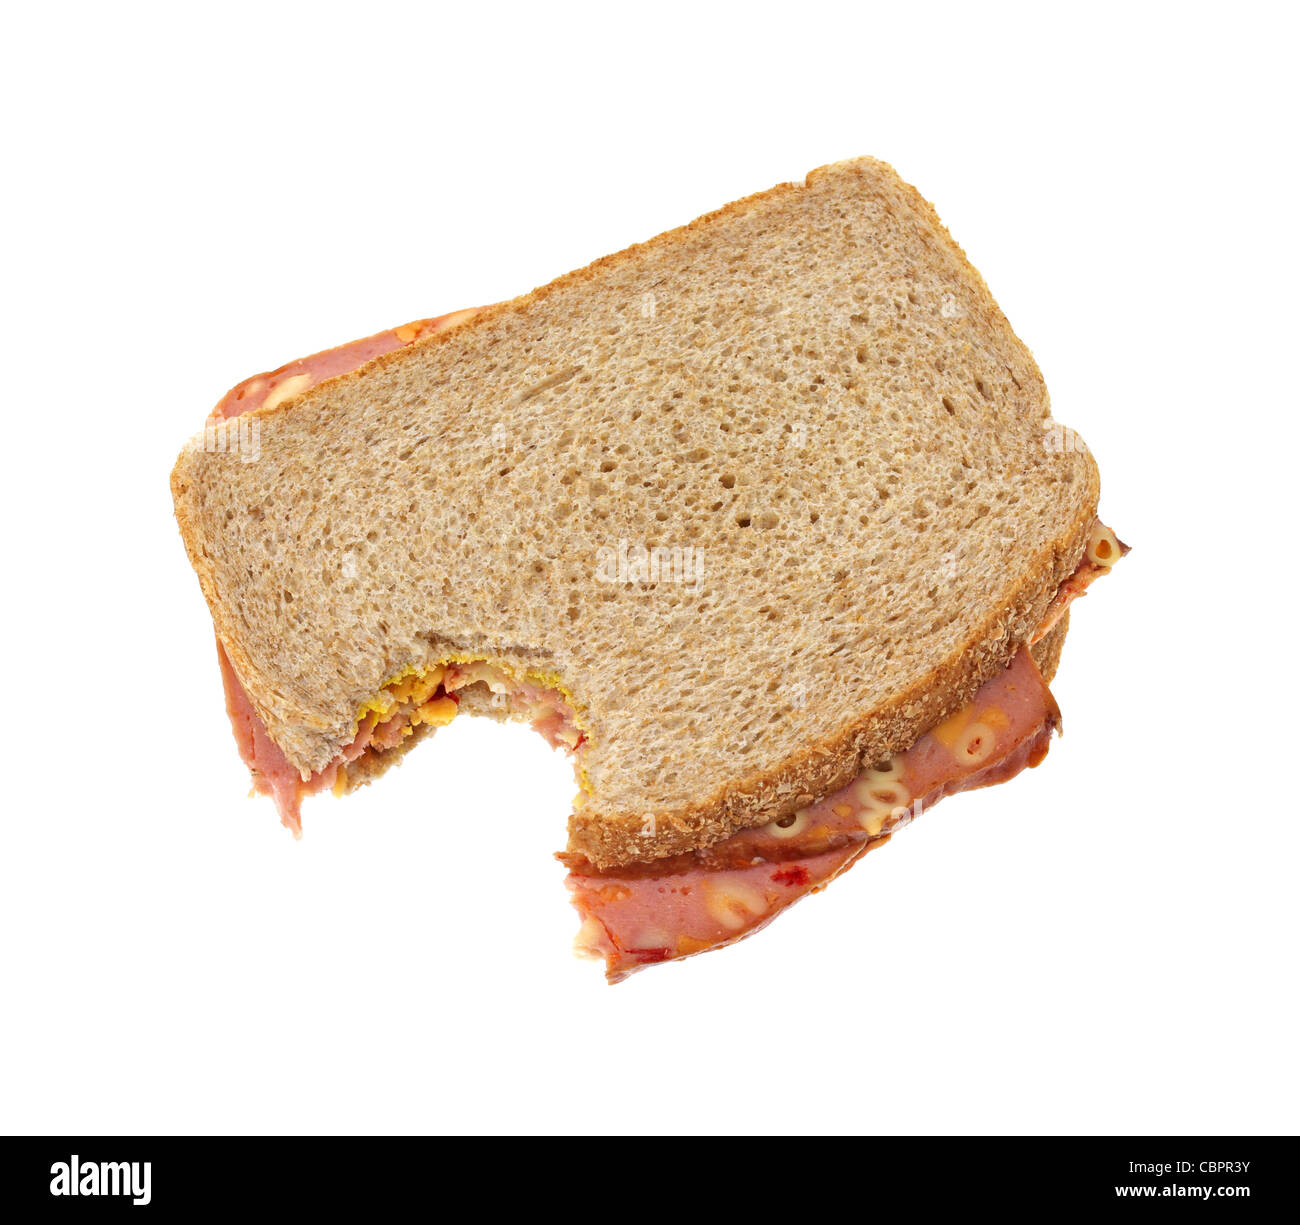 Makkaroni und Käse Brot Sandwich gebissen Stockfoto